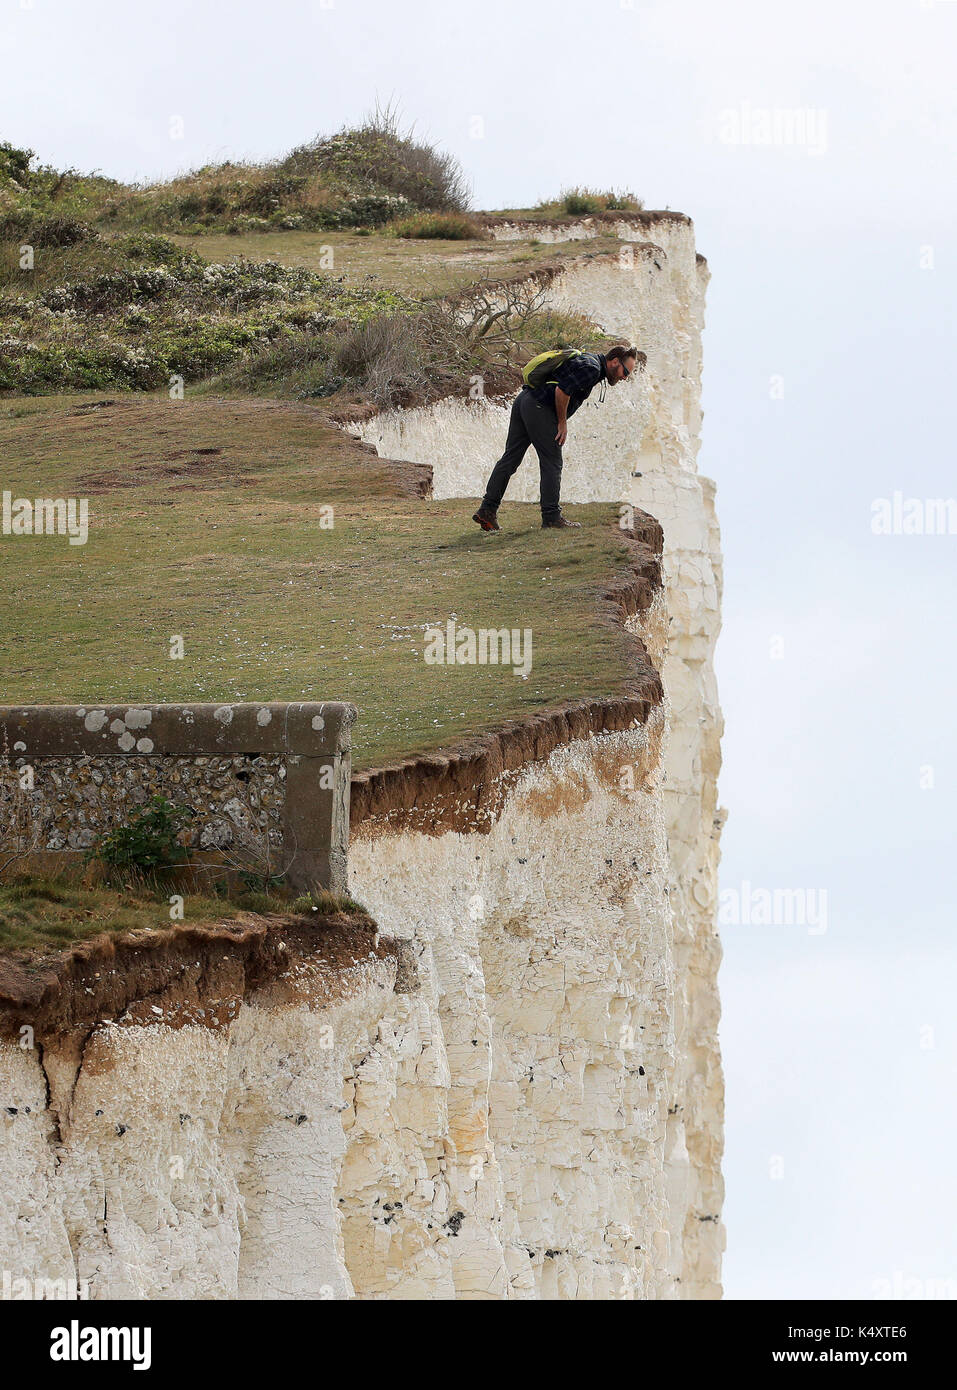 Ein Mann an den Rand der Klippen am Birling Gap in East Sussex trotz der Sicherheit Warnungen nach den jüngsten Rock im Bereich fällt. Bild Datum: Donnerstag, 7. September 2017. Photo Credit: Gareth Fuller/PA-Kabel Stockfoto